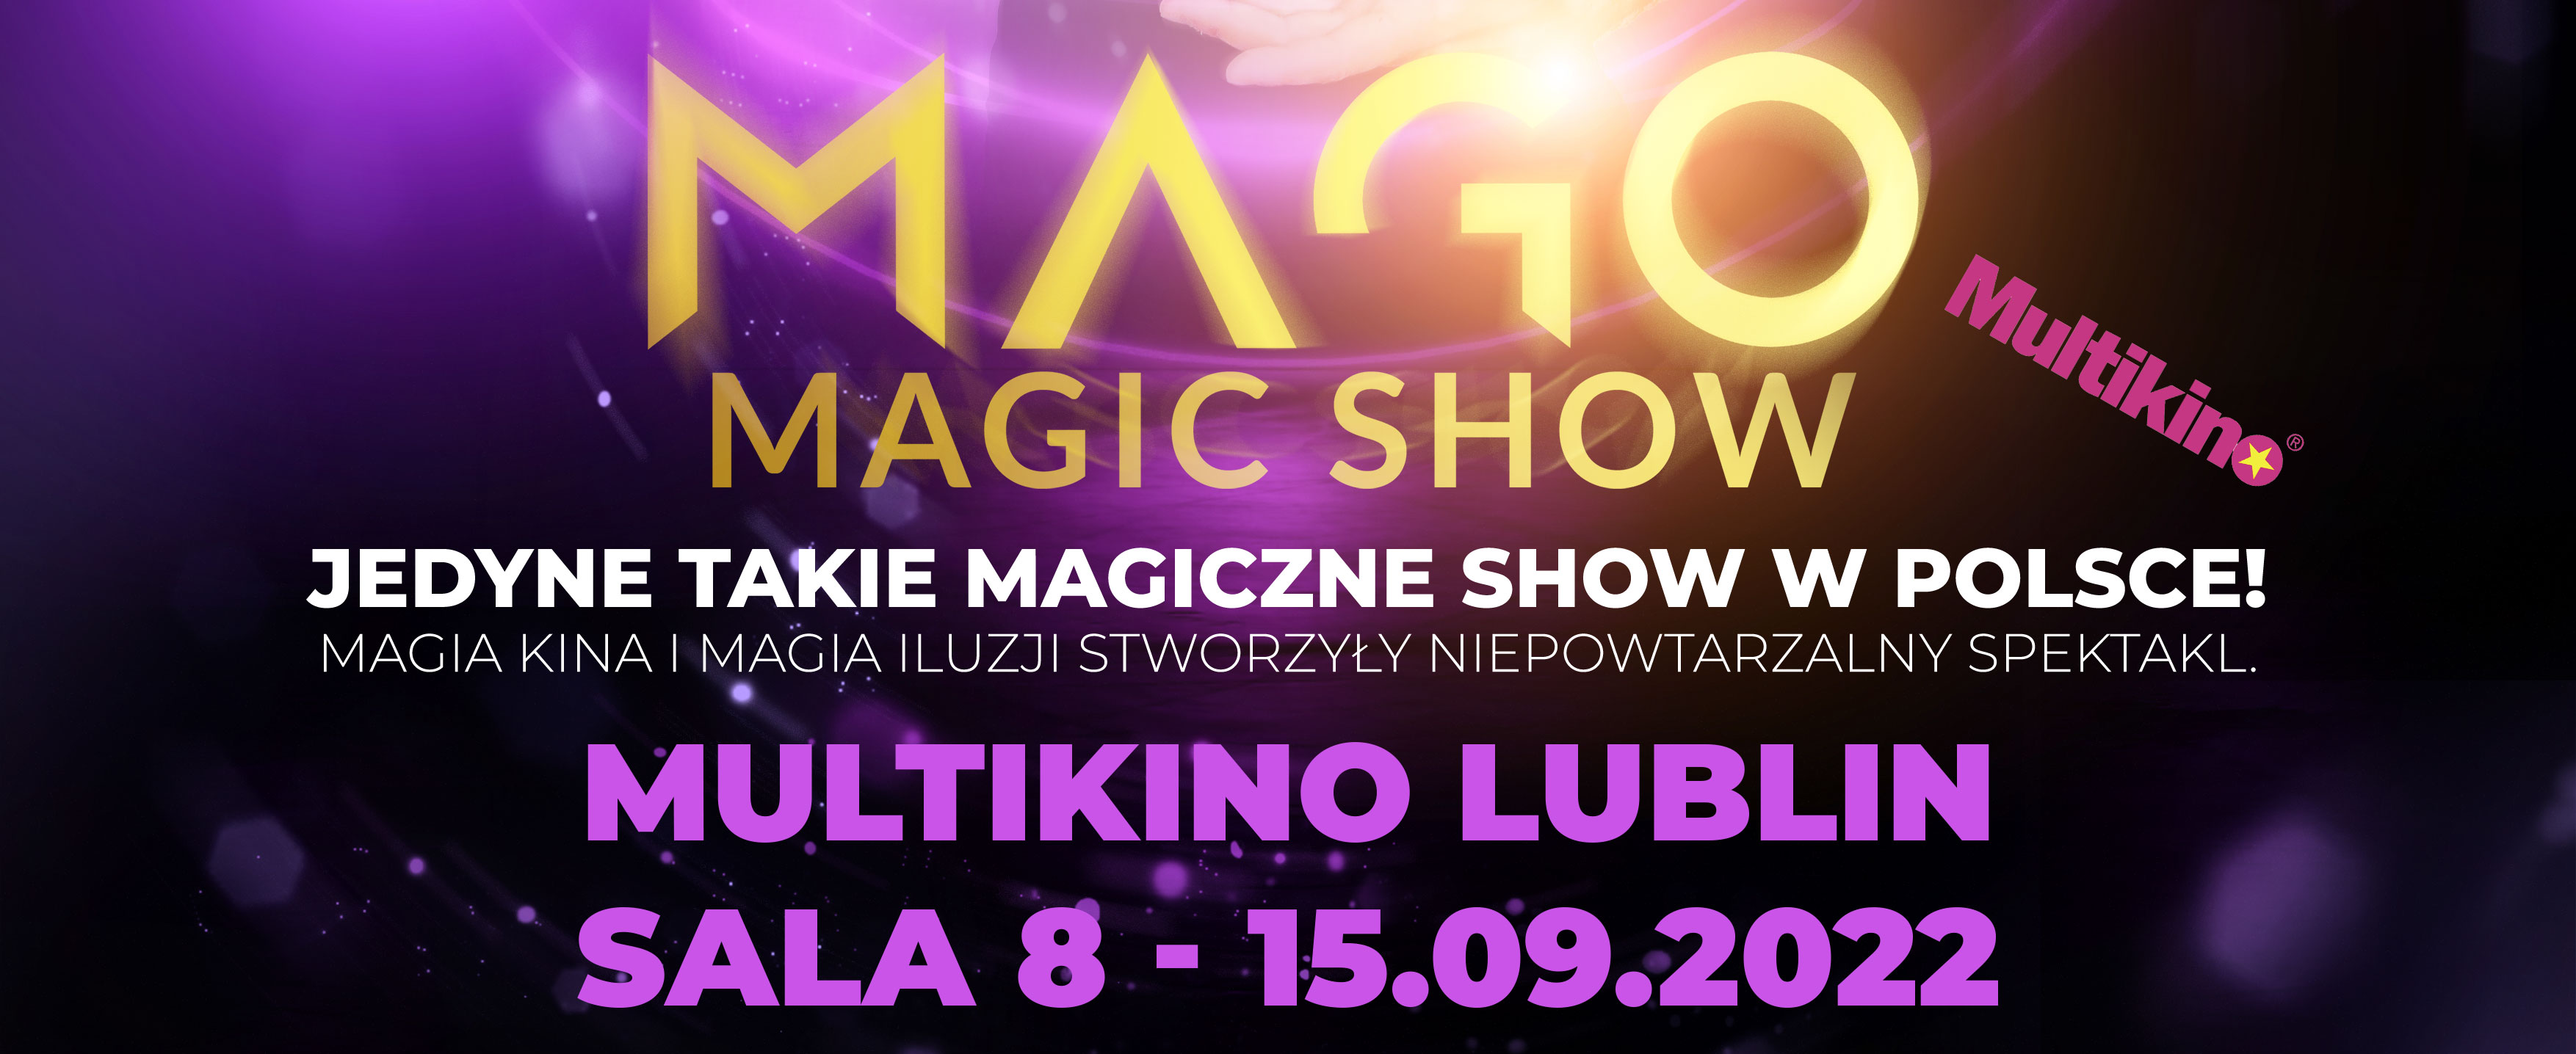 Plakat Mago Magic Show - Iluzjonista Bartosz Szubert 92440